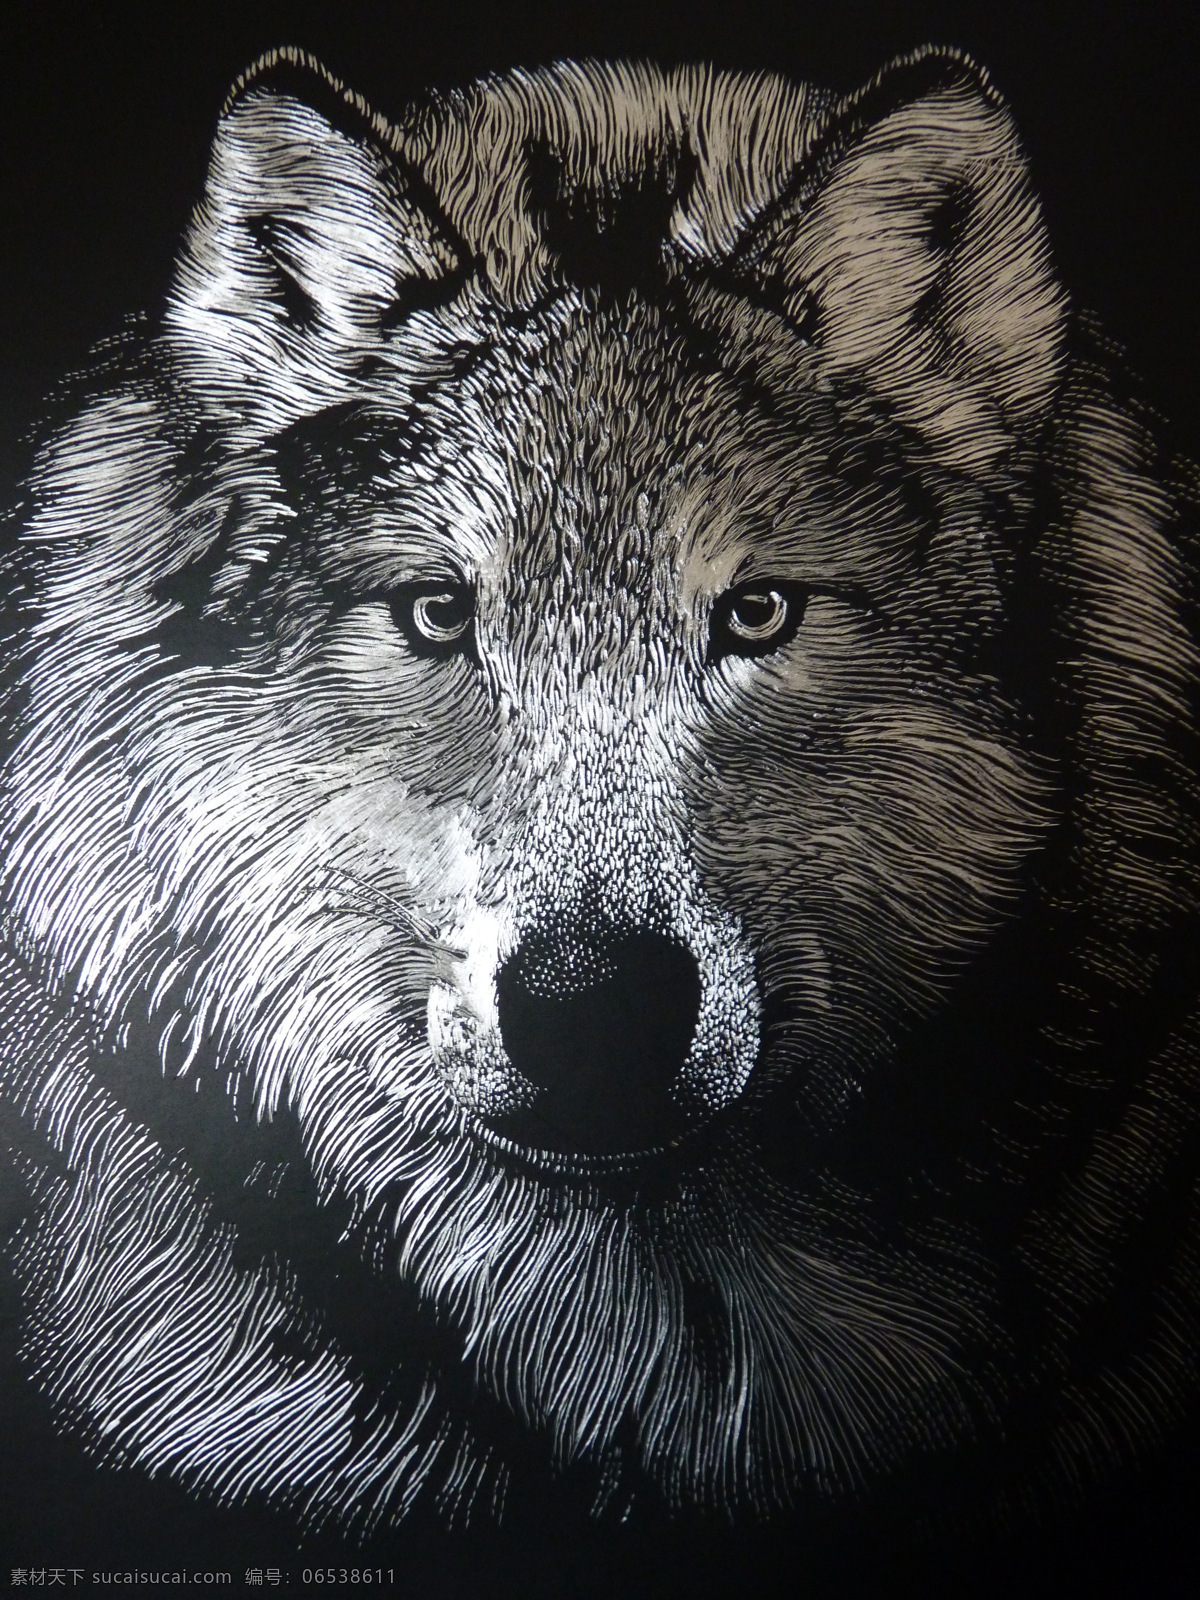 木刻狼 摄影图片 摄影素材 艺术图片 木刻动物 木刻 设计素材 文化艺术